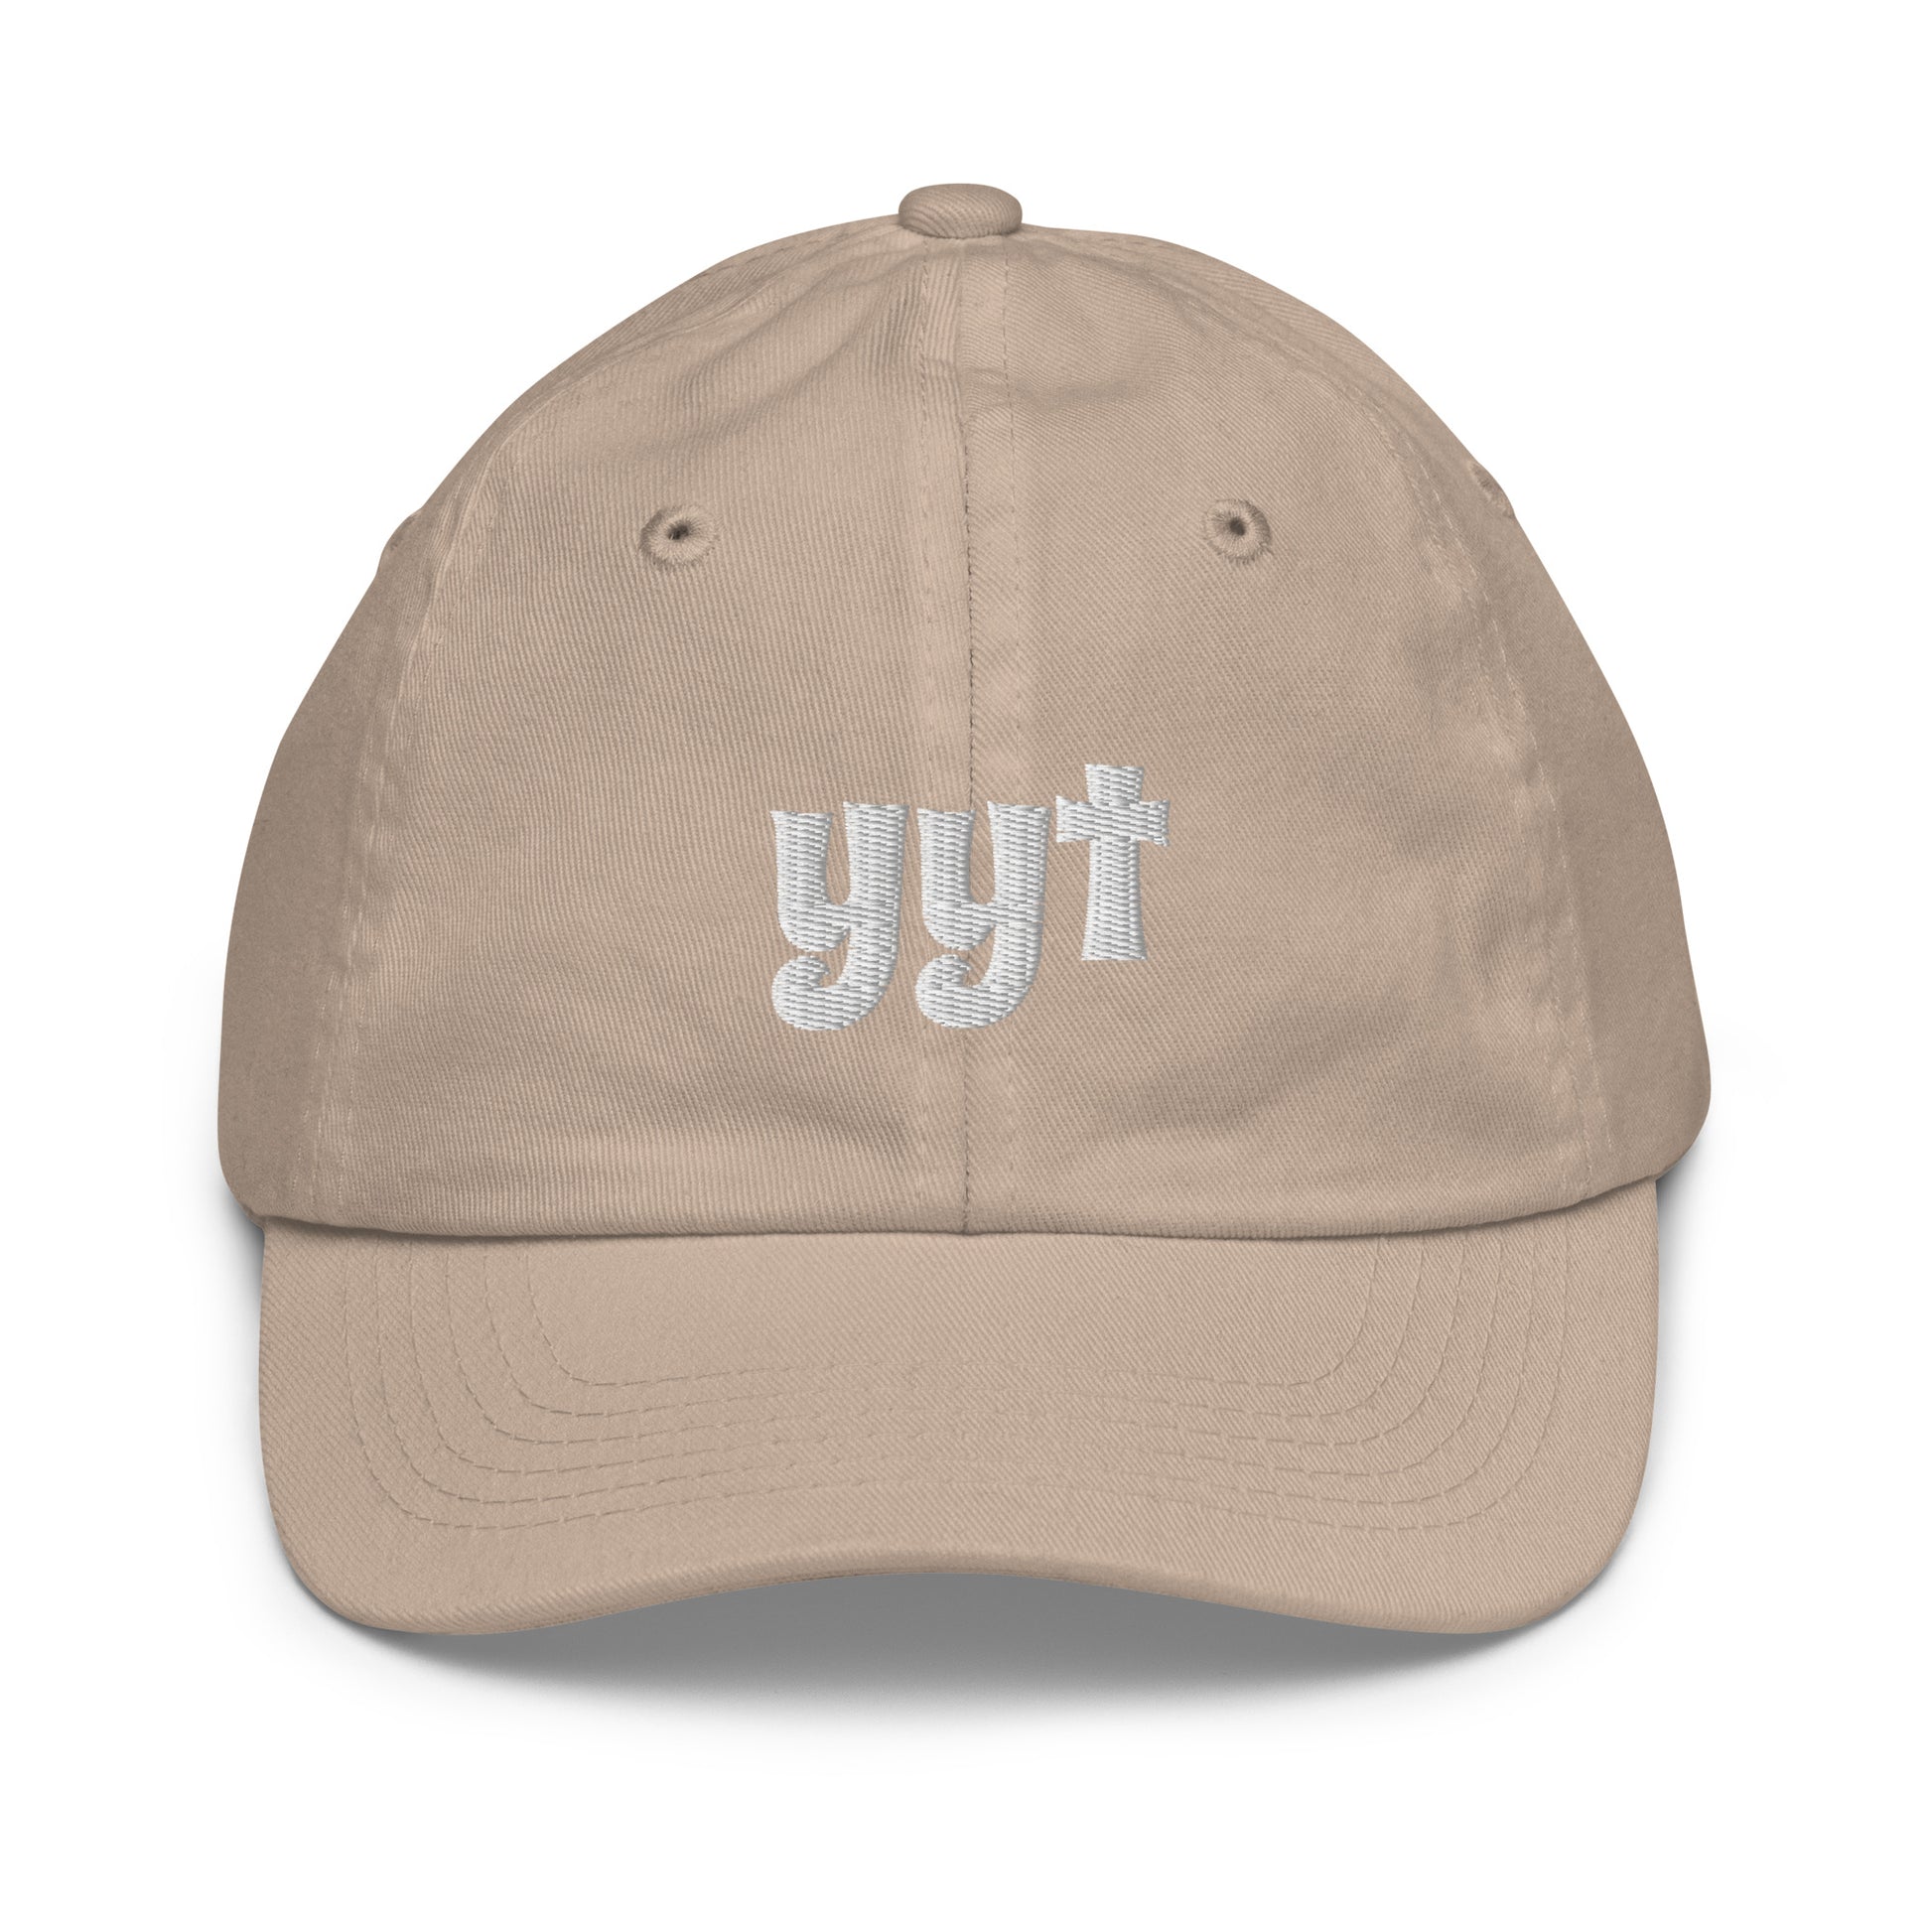 Groovy Kid's Baseball Cap - White • YYT St. John's • YHM Designs - Image 21